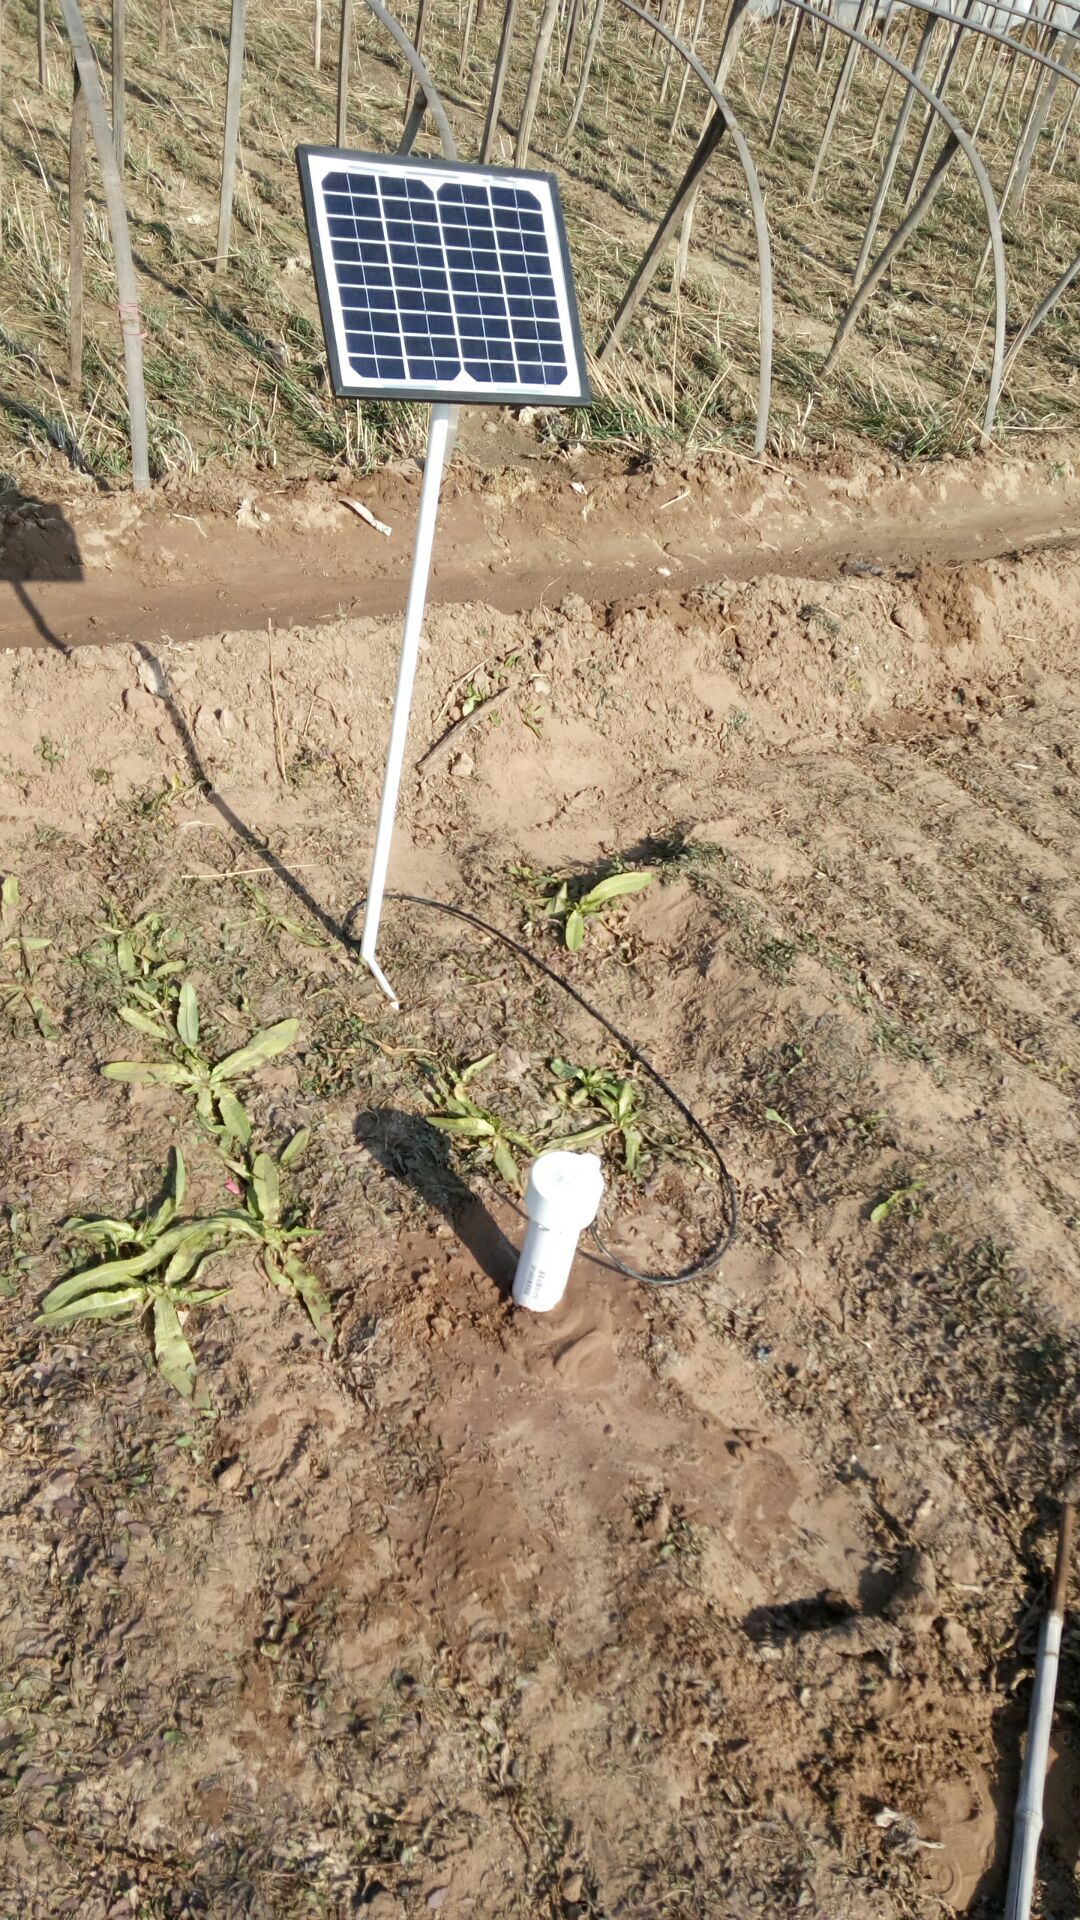 土壤湿度速测仪非接触式TDR水分检测土壤墒情水分测量仪测定仪土壤墒情监测站 土壤水分传感器,土壤温湿度传感,土壤水分监测仪,土壤墒情监测仪